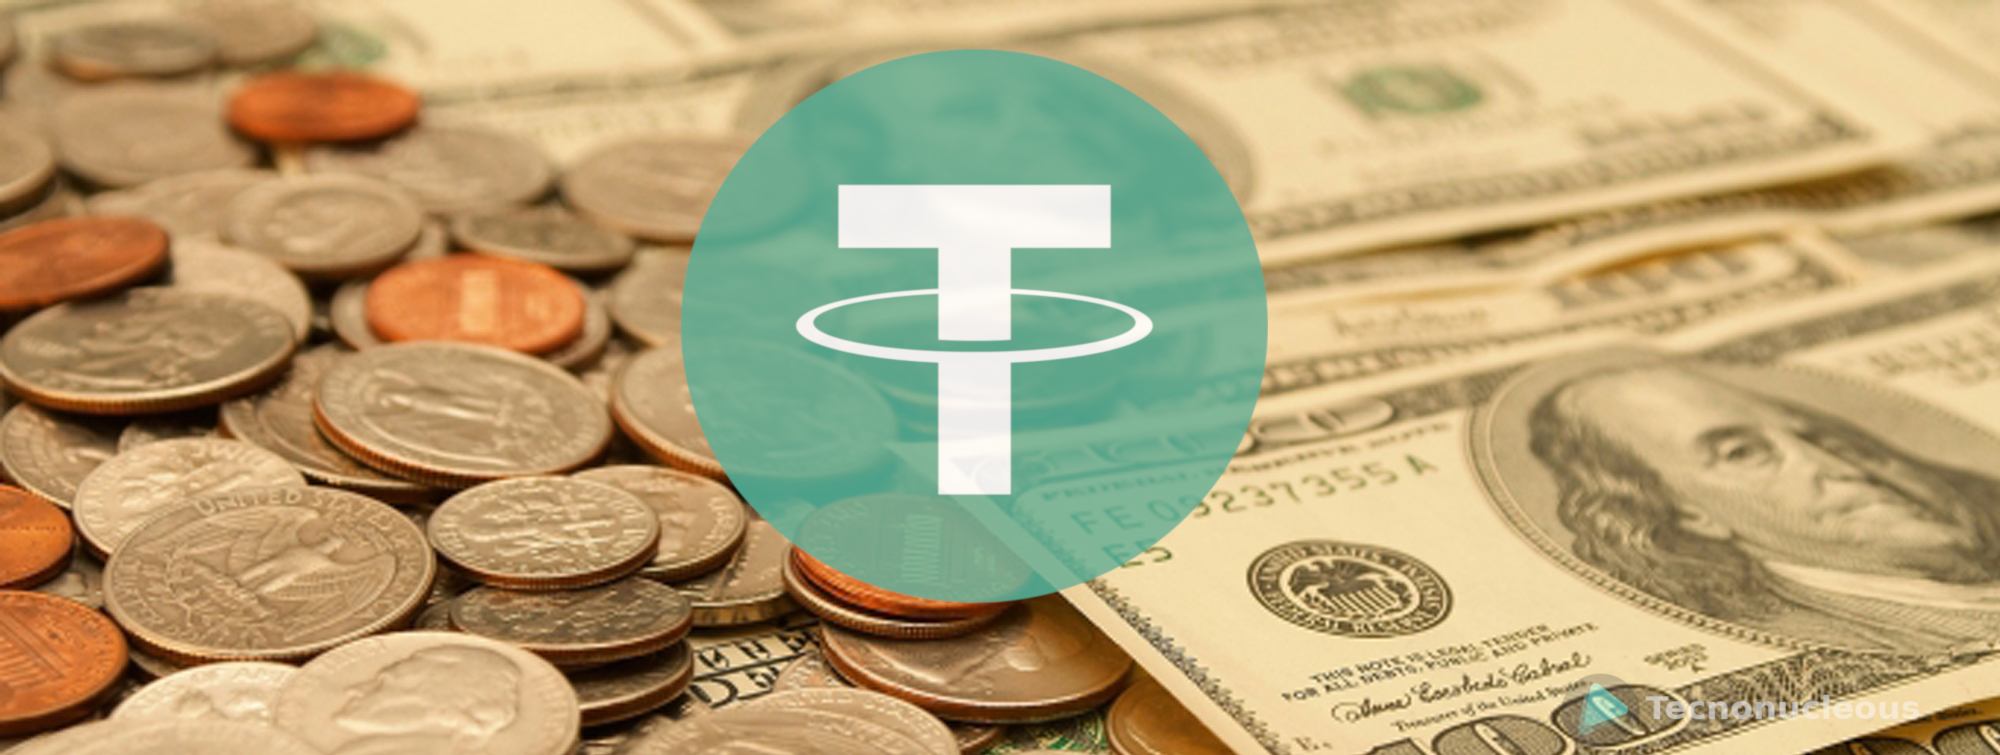 Tether (USDT) imprime 250 millones de dólares adicionales, los inversores esperan la respuesta del mercado